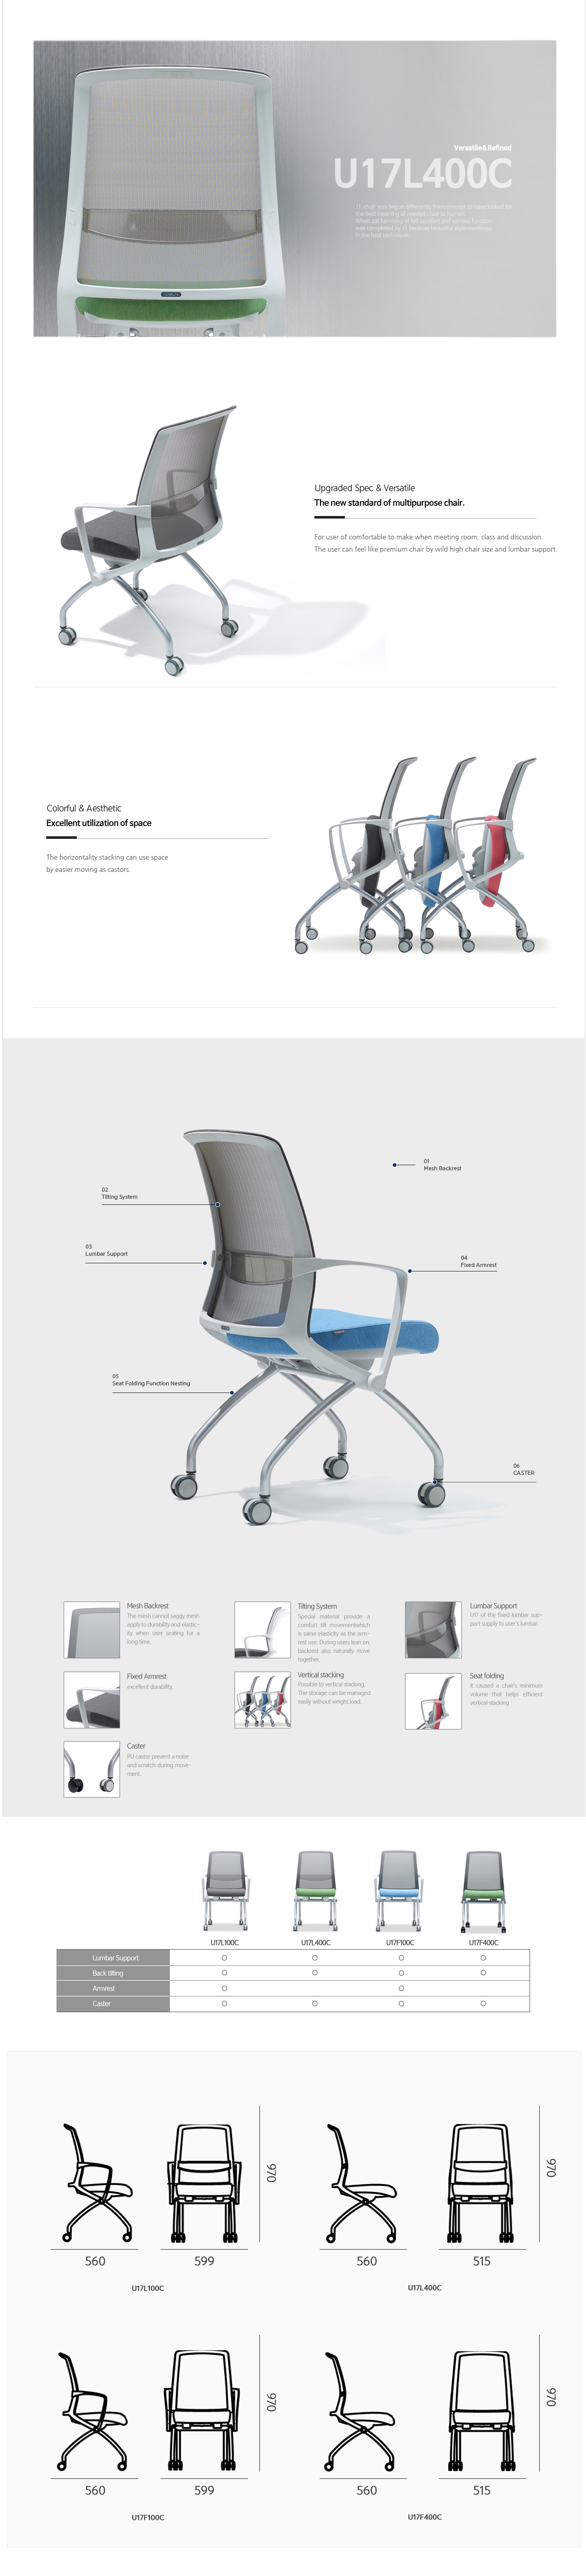 Luxdezine Multipurpose Chairs U17L400C